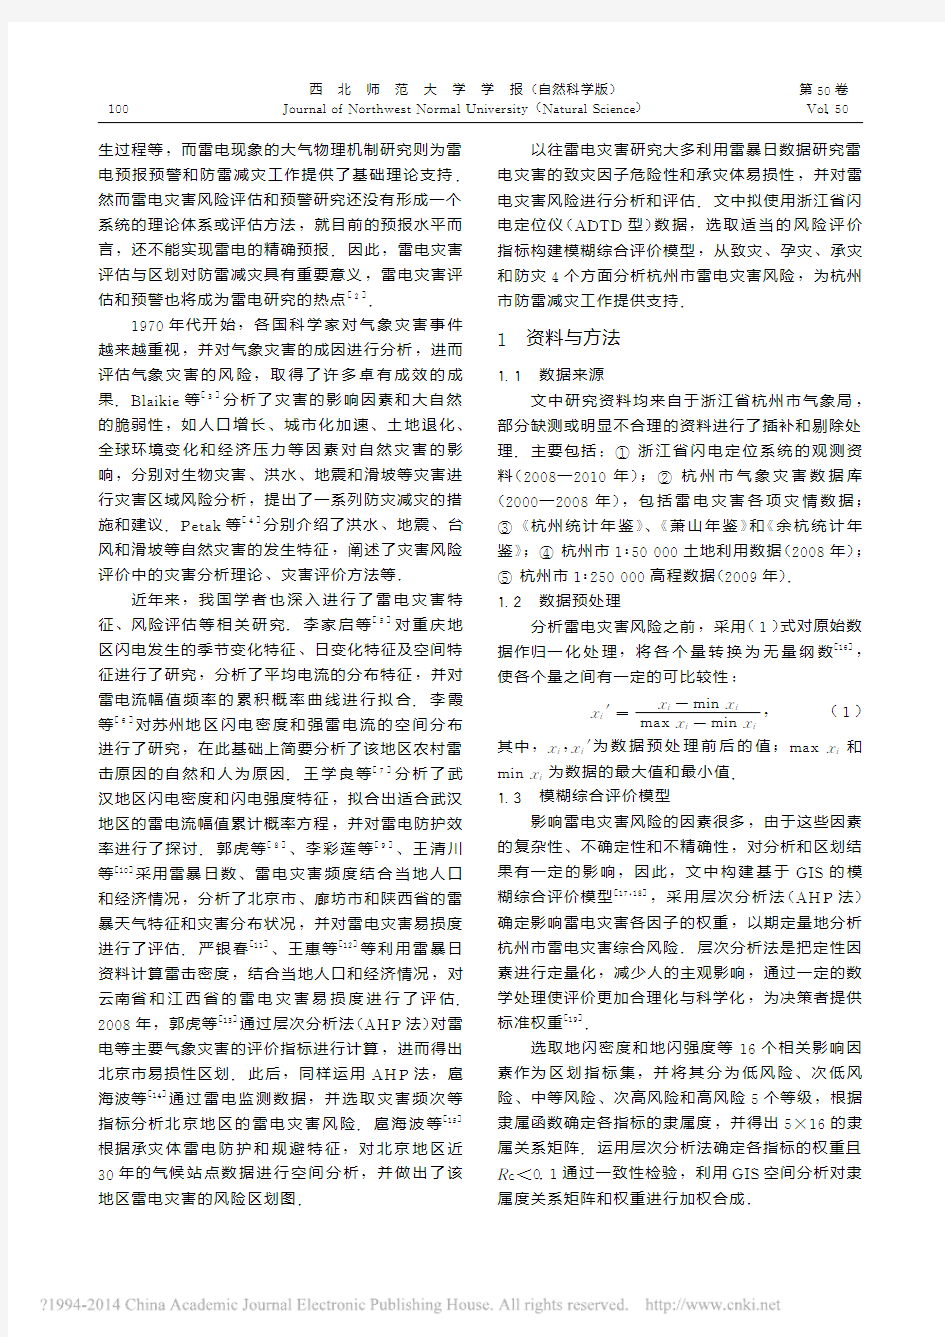 杭州市雷电灾害风险区划及分析_刘垚